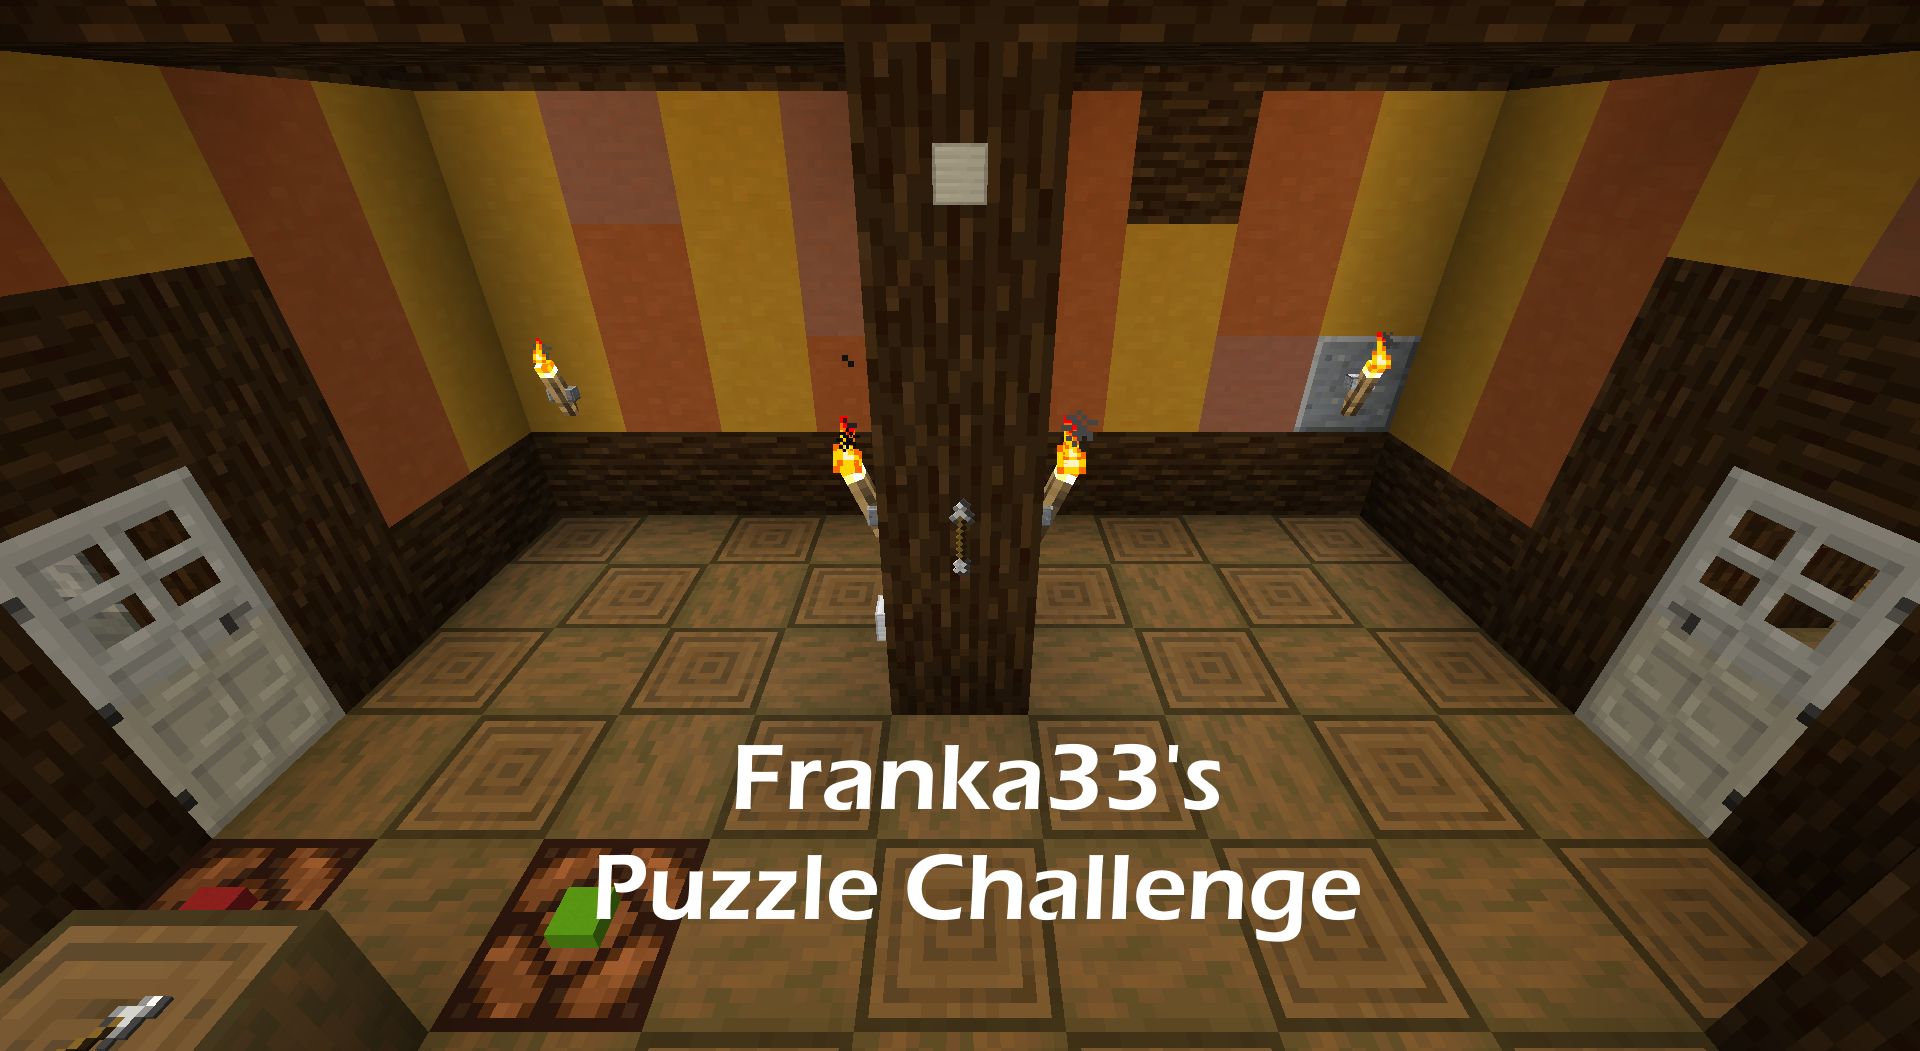 Télécharger Franka33's Puzzle Challenge pour Minecraft 1.16.5